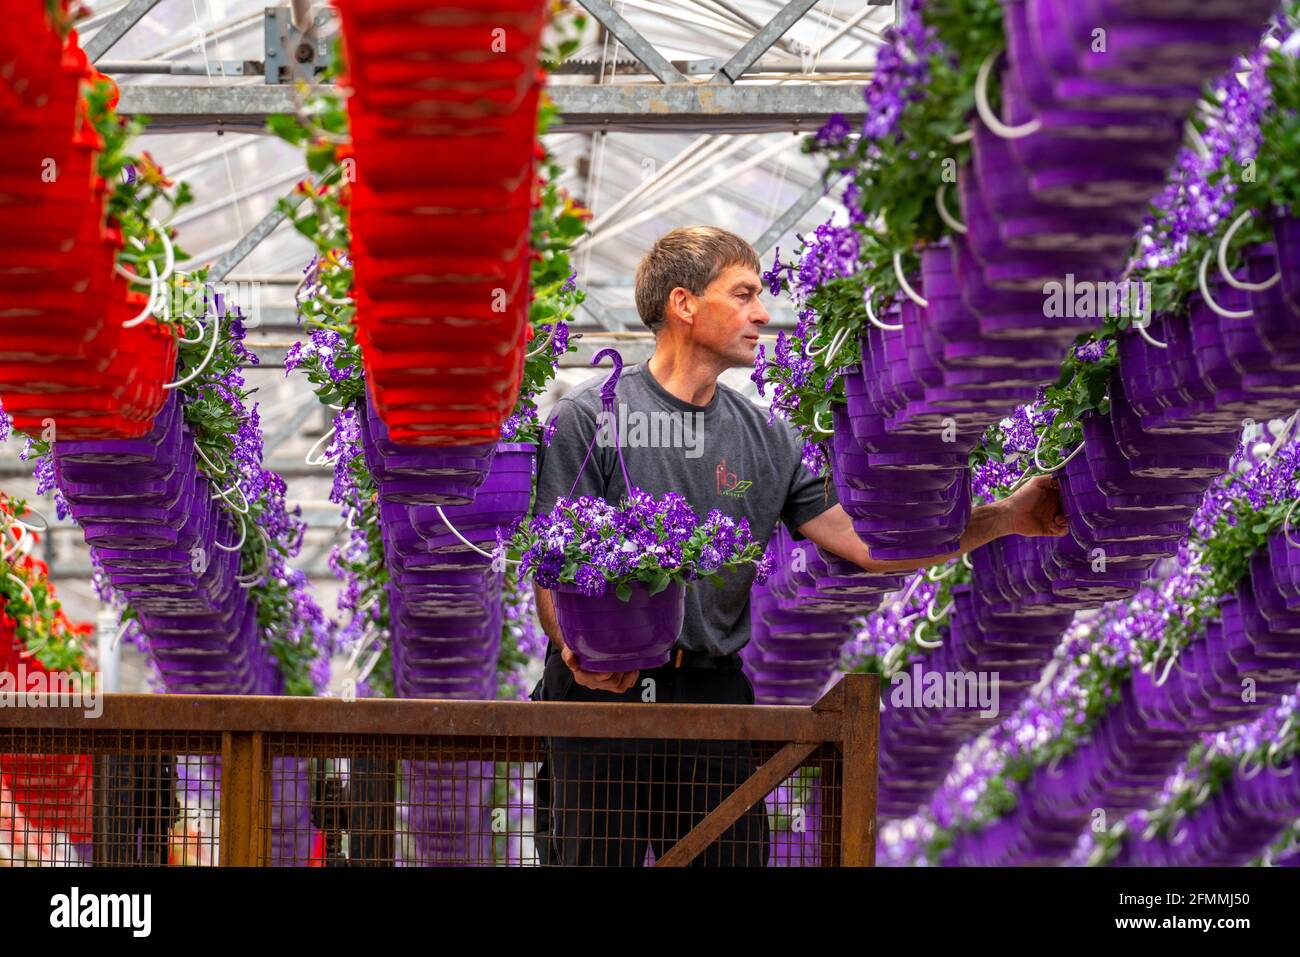 Gartenbau-Geschäft, Blumentöpfe, so genannte Petunia-Ampeln, wachsen in einem Gewächshaus, unter dem Glasdach, bis sie die richtige Wachstumsstufe für r haben Stockfoto